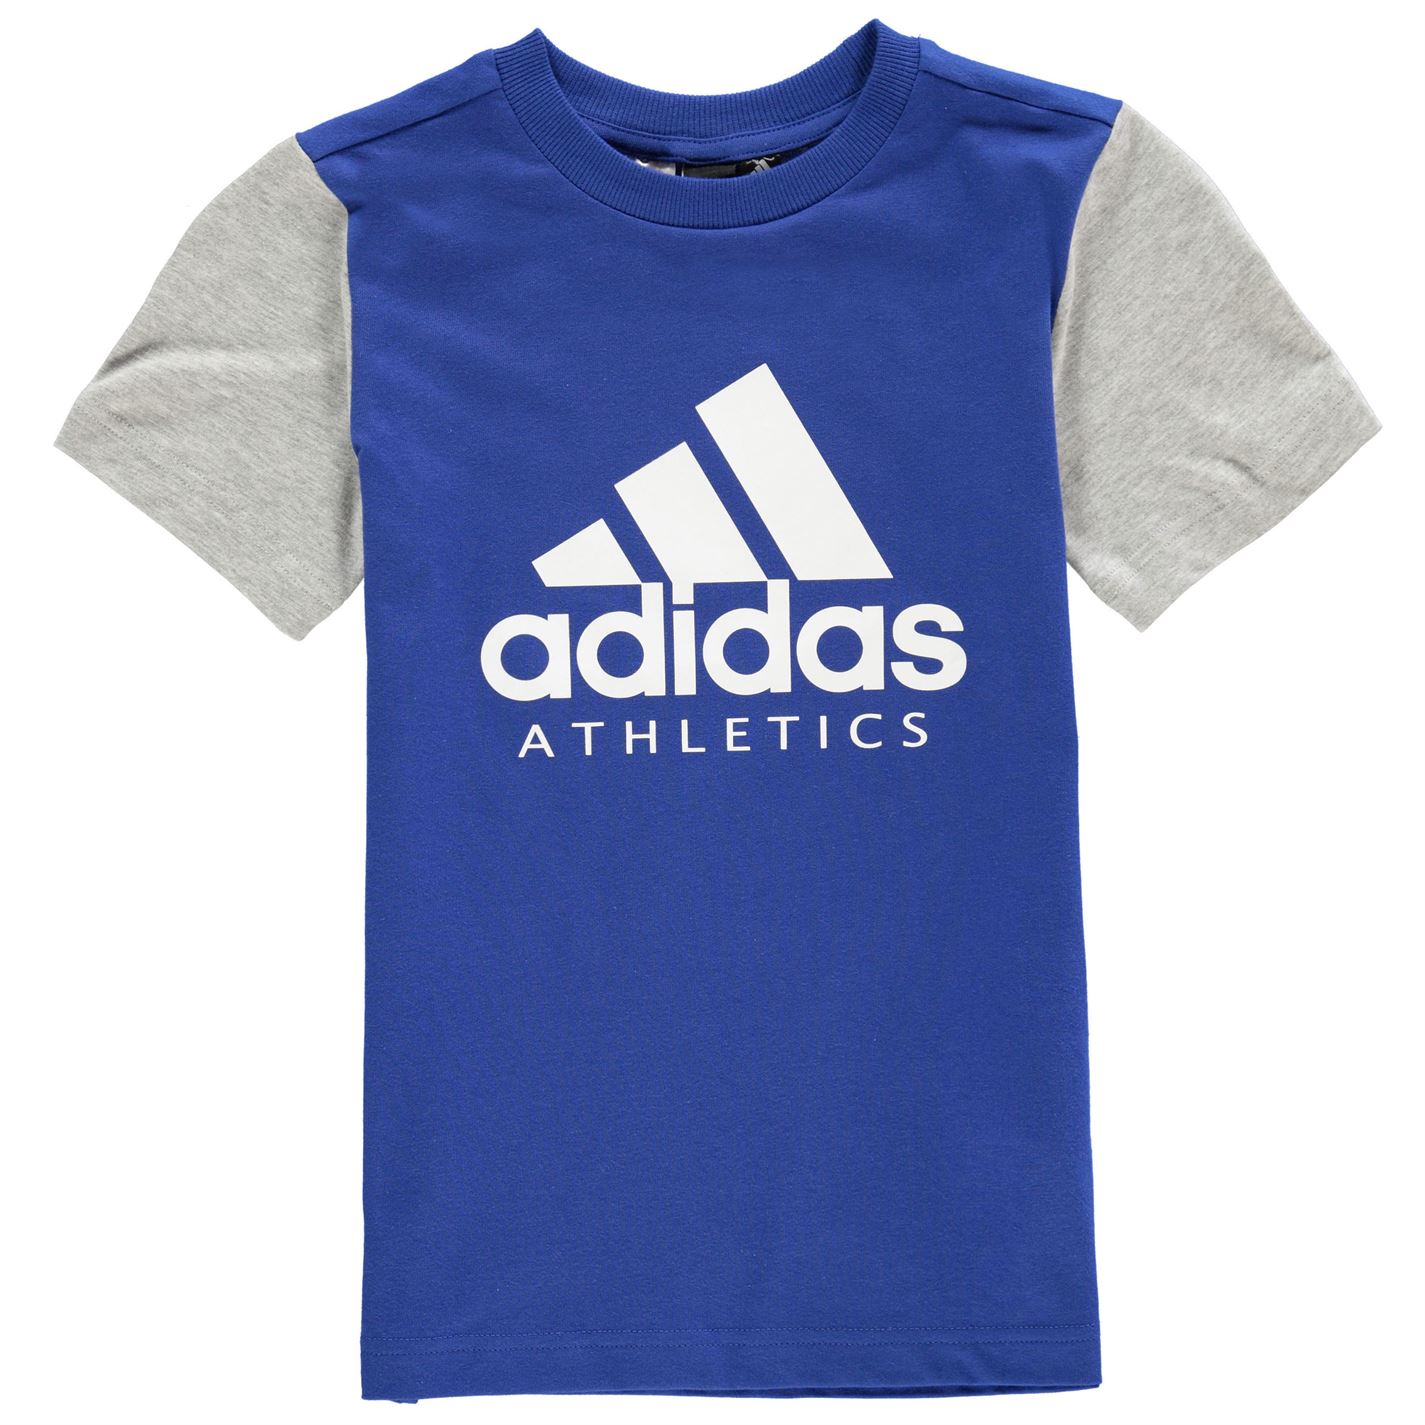 dětské tričko ADIDAS - BLUE/GREY - 140 9-10 let